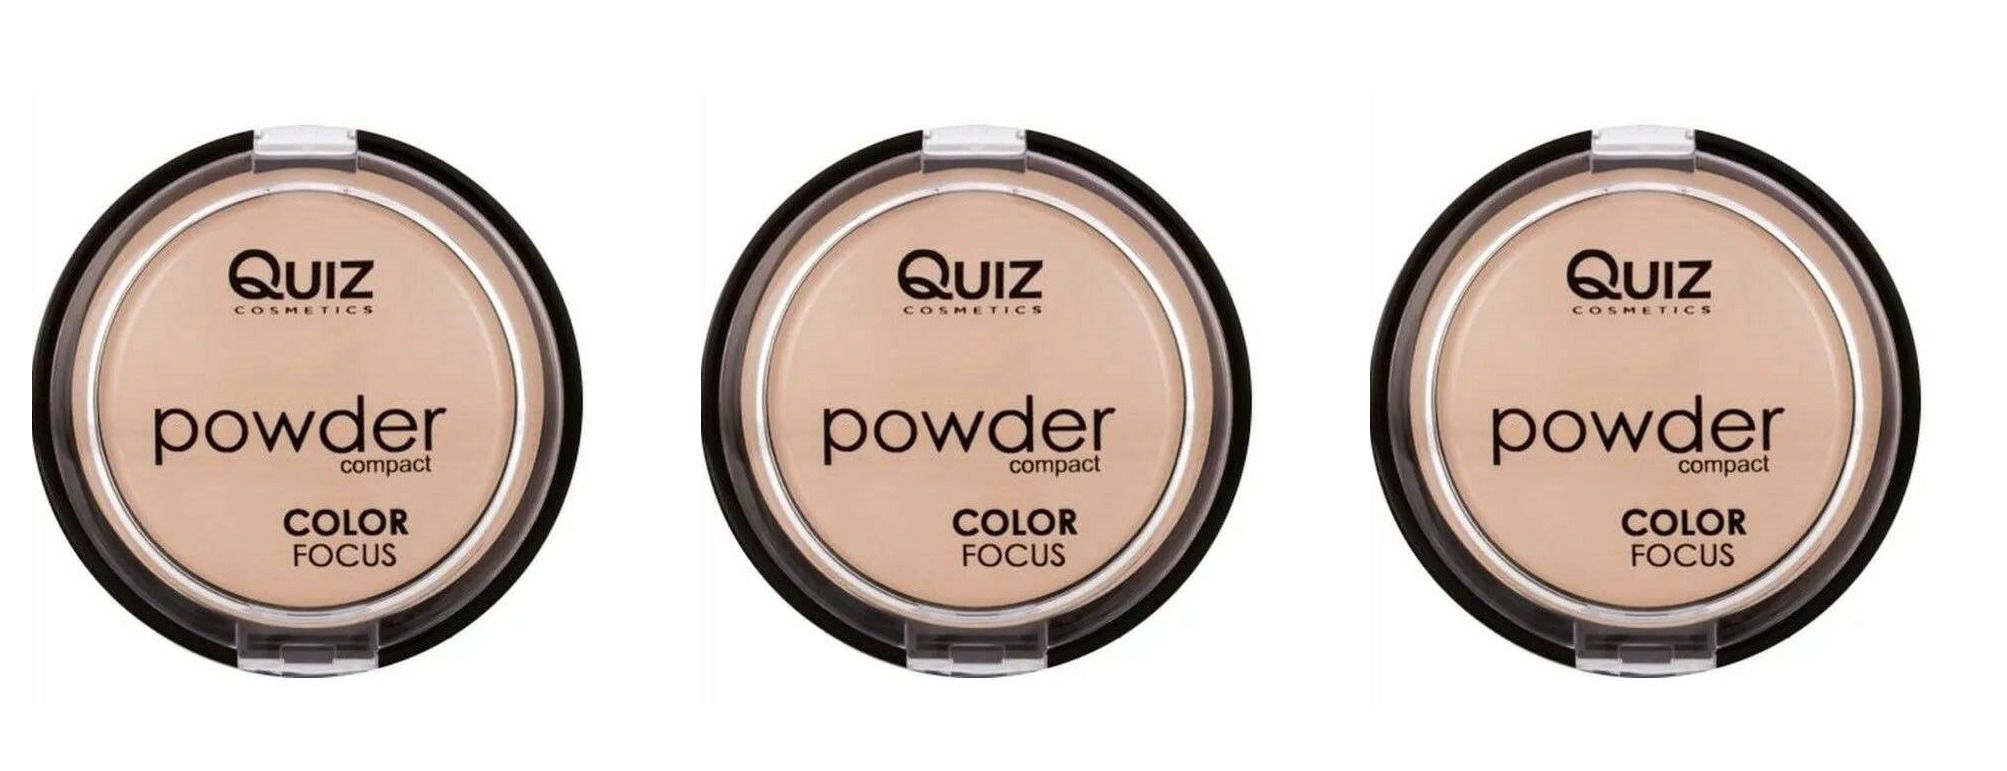 Пудра компактная Quiz cosmetics, Powder Focus, Color 60, 3 шт